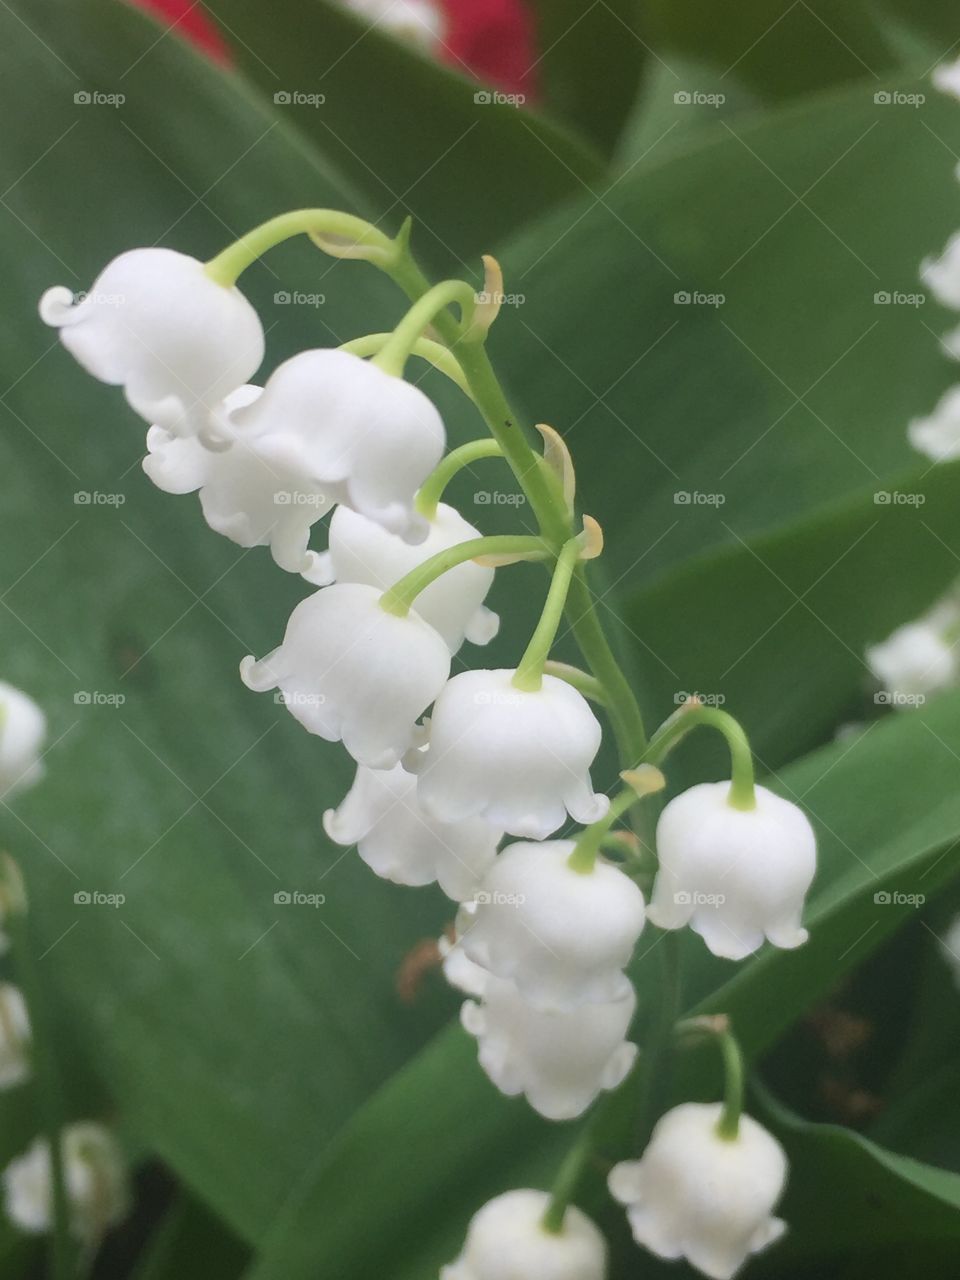 Little white bells